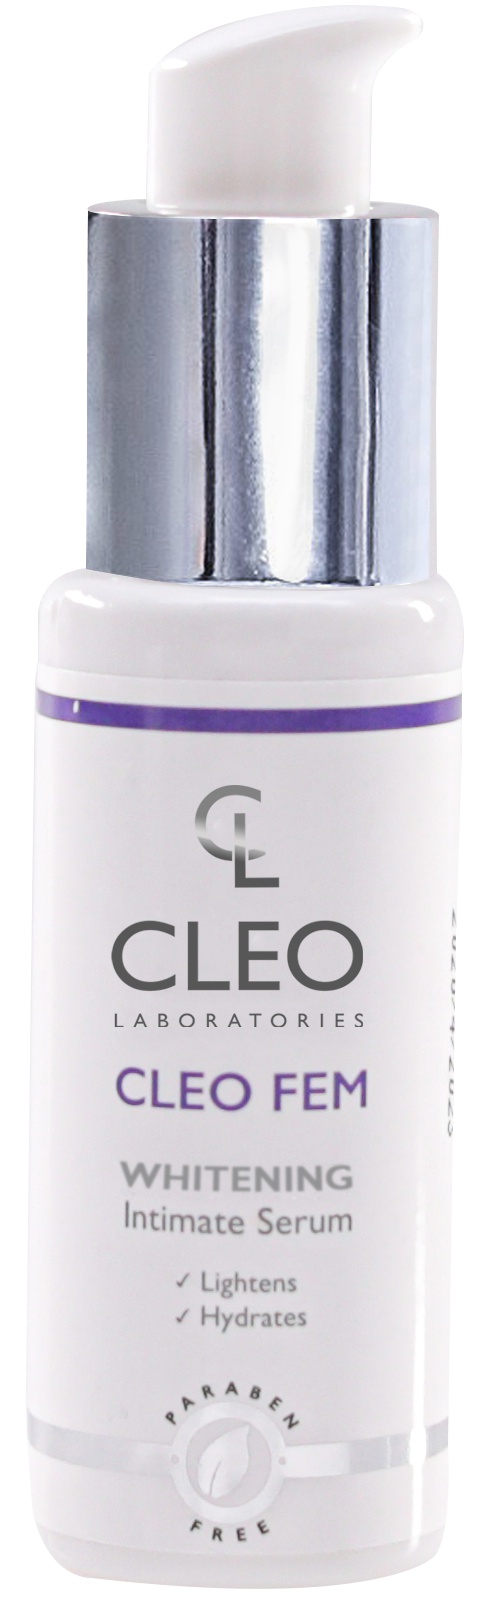 Cleo Laboratories Whitening Intimate Serum